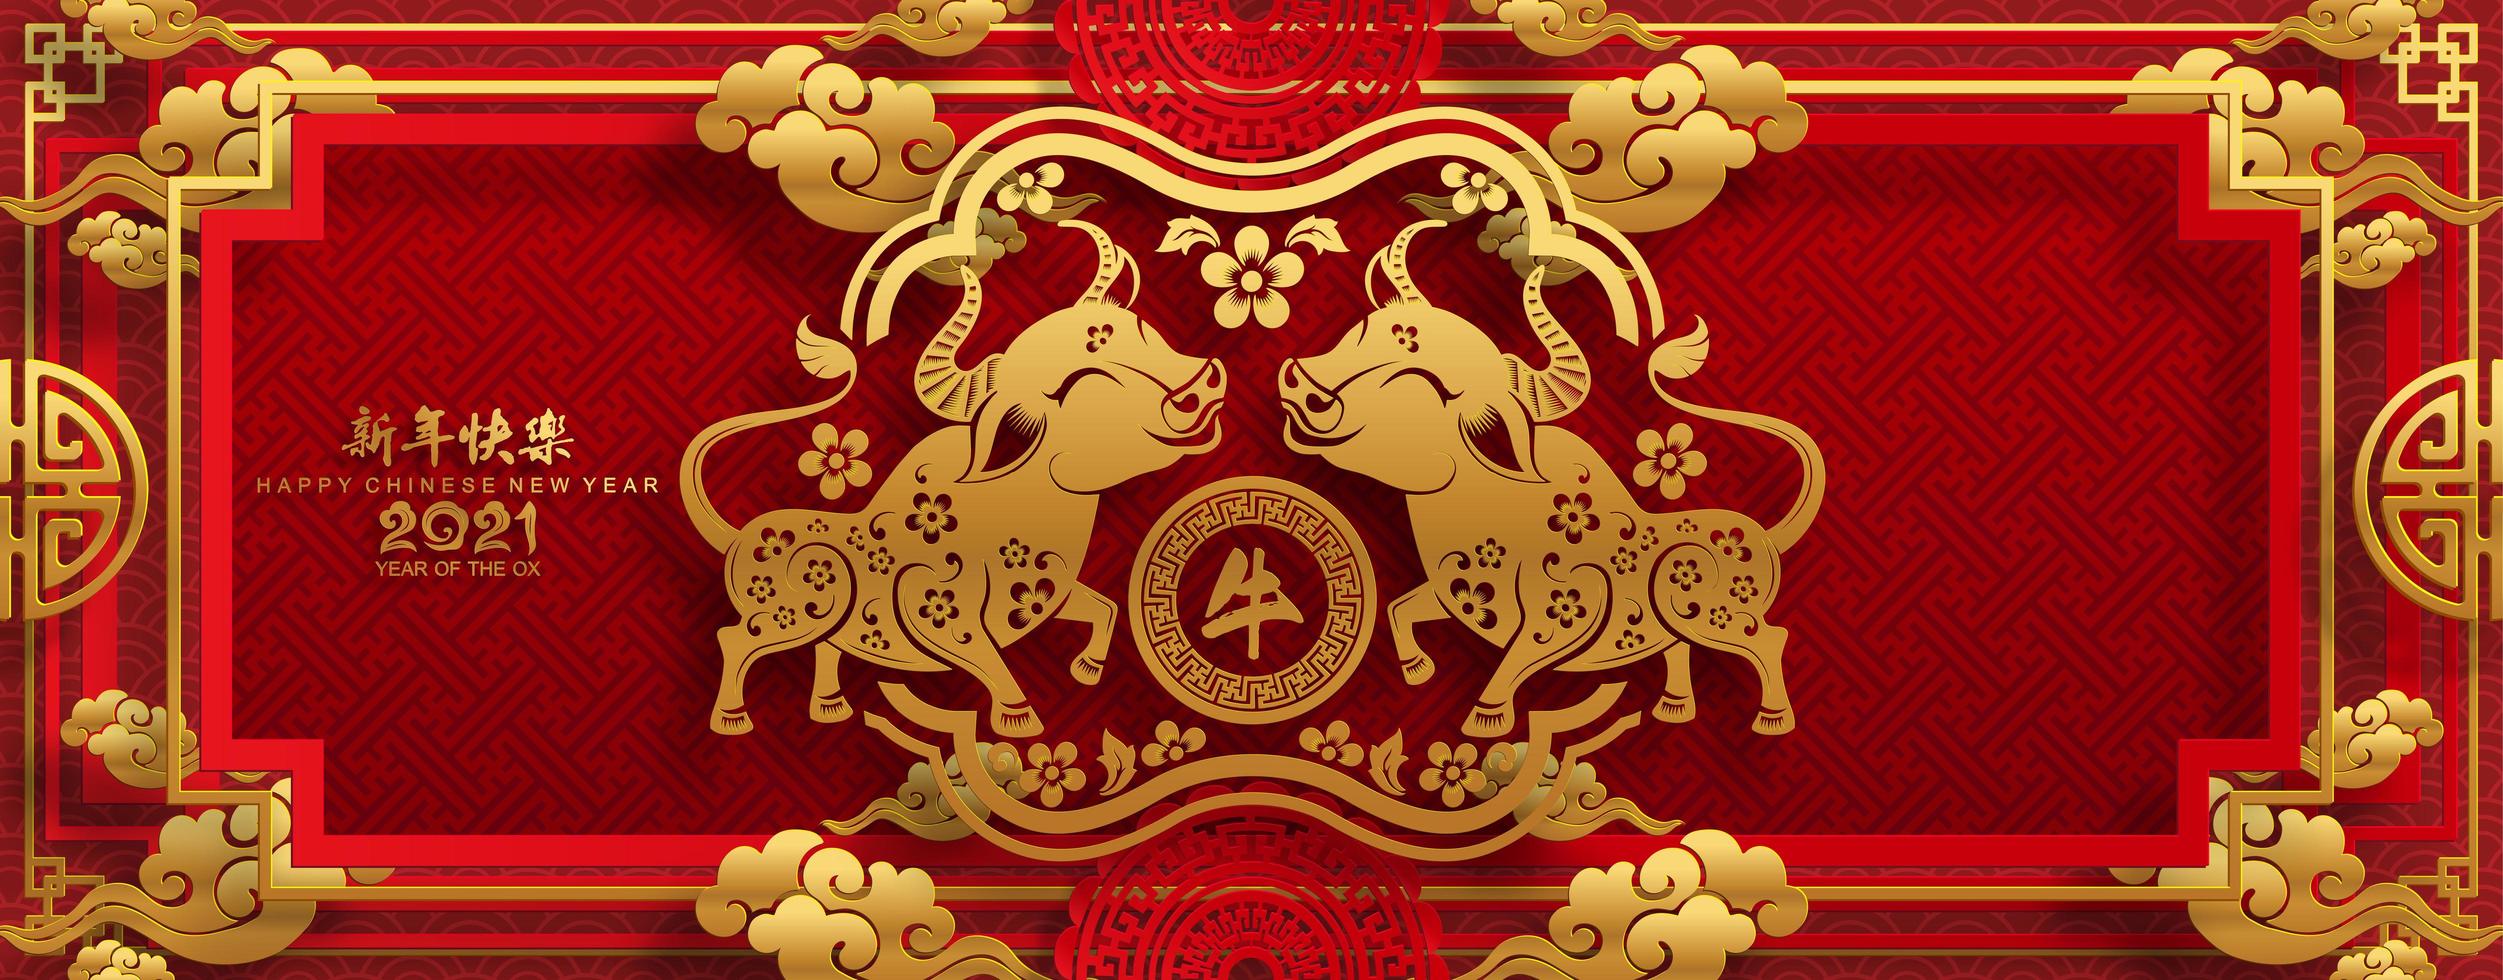 ano novo chinês 2021 banner com bois de ouro vetor